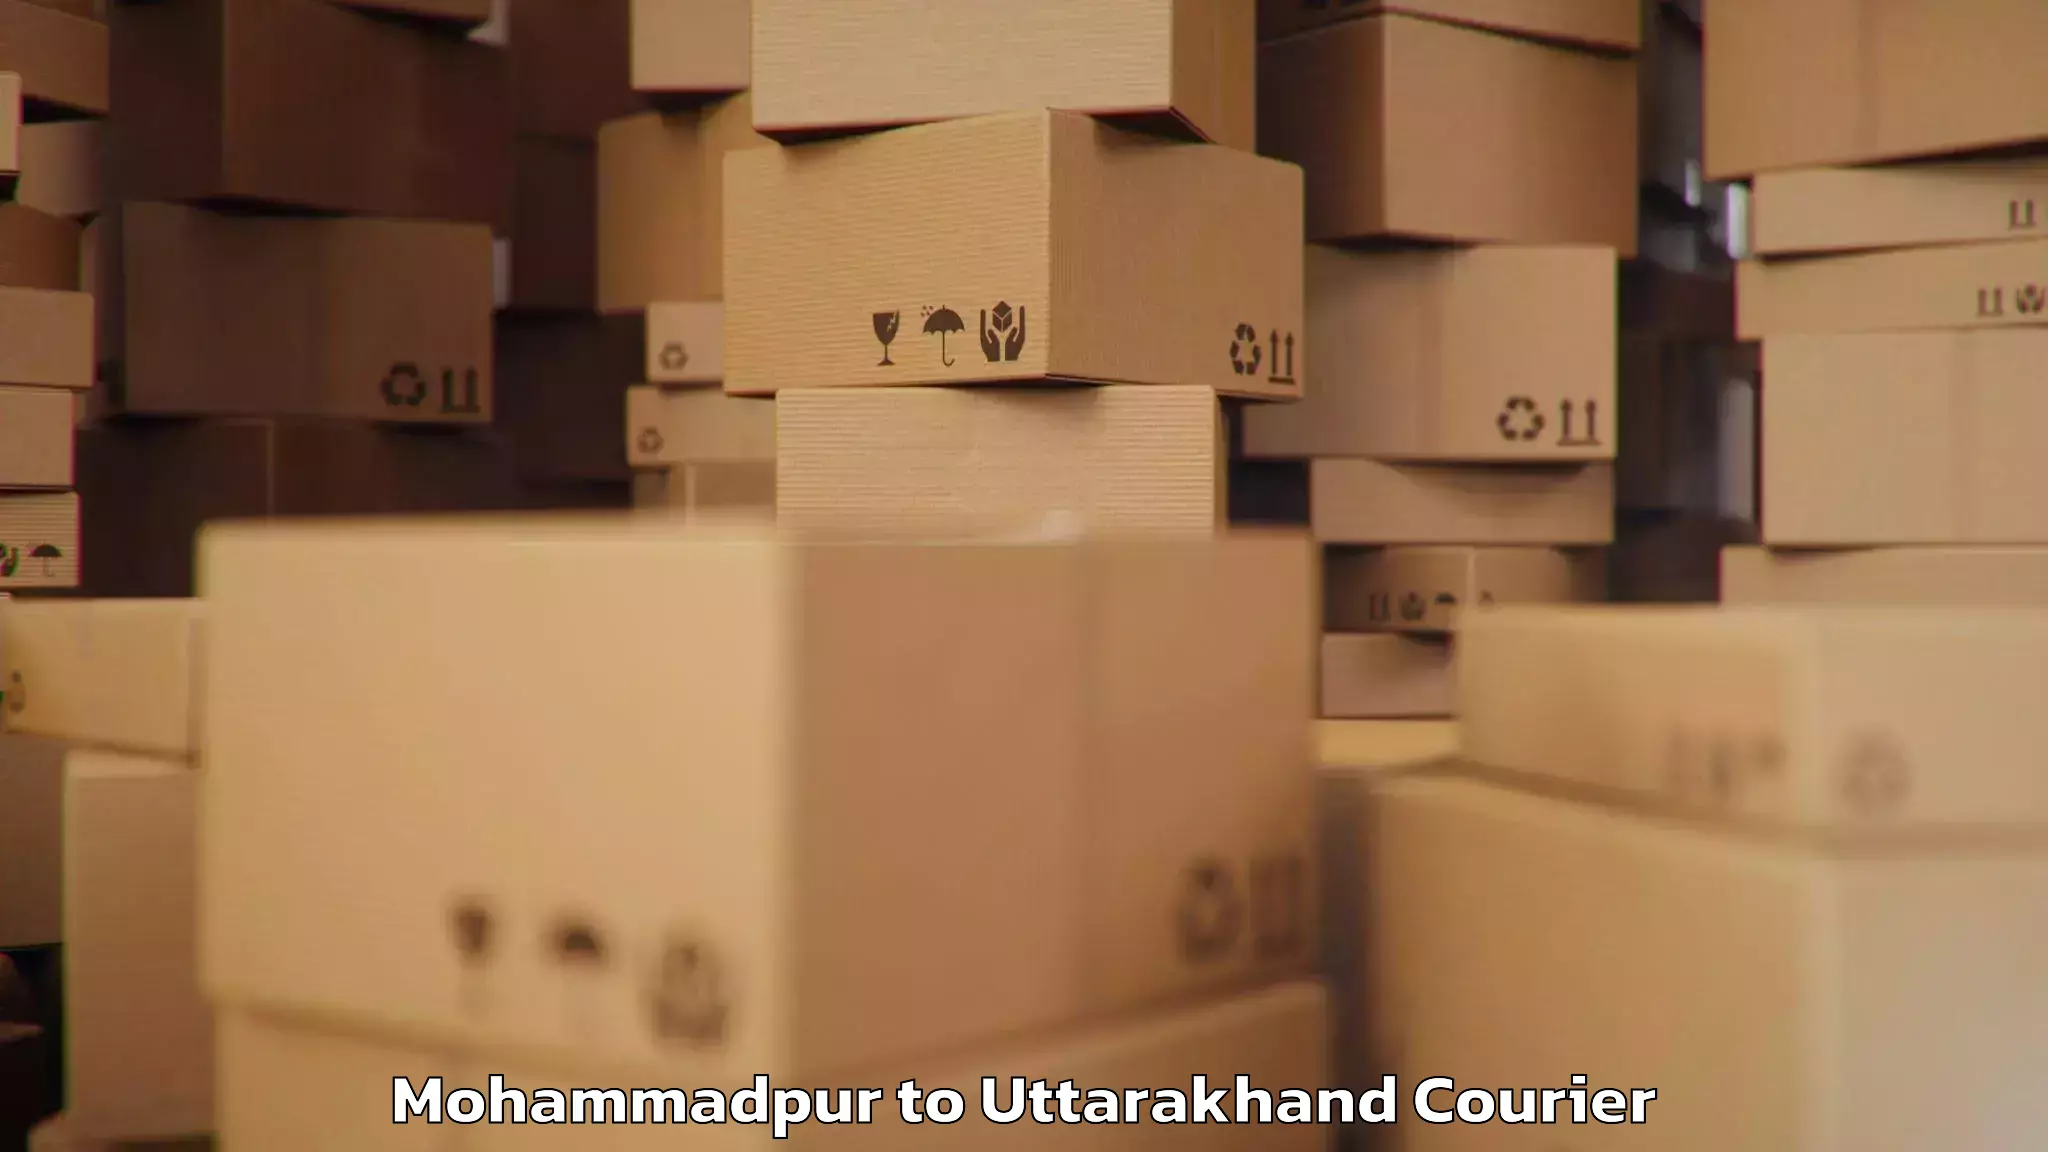 Luggage transport logistics Mohammadpur to Uttarakhand